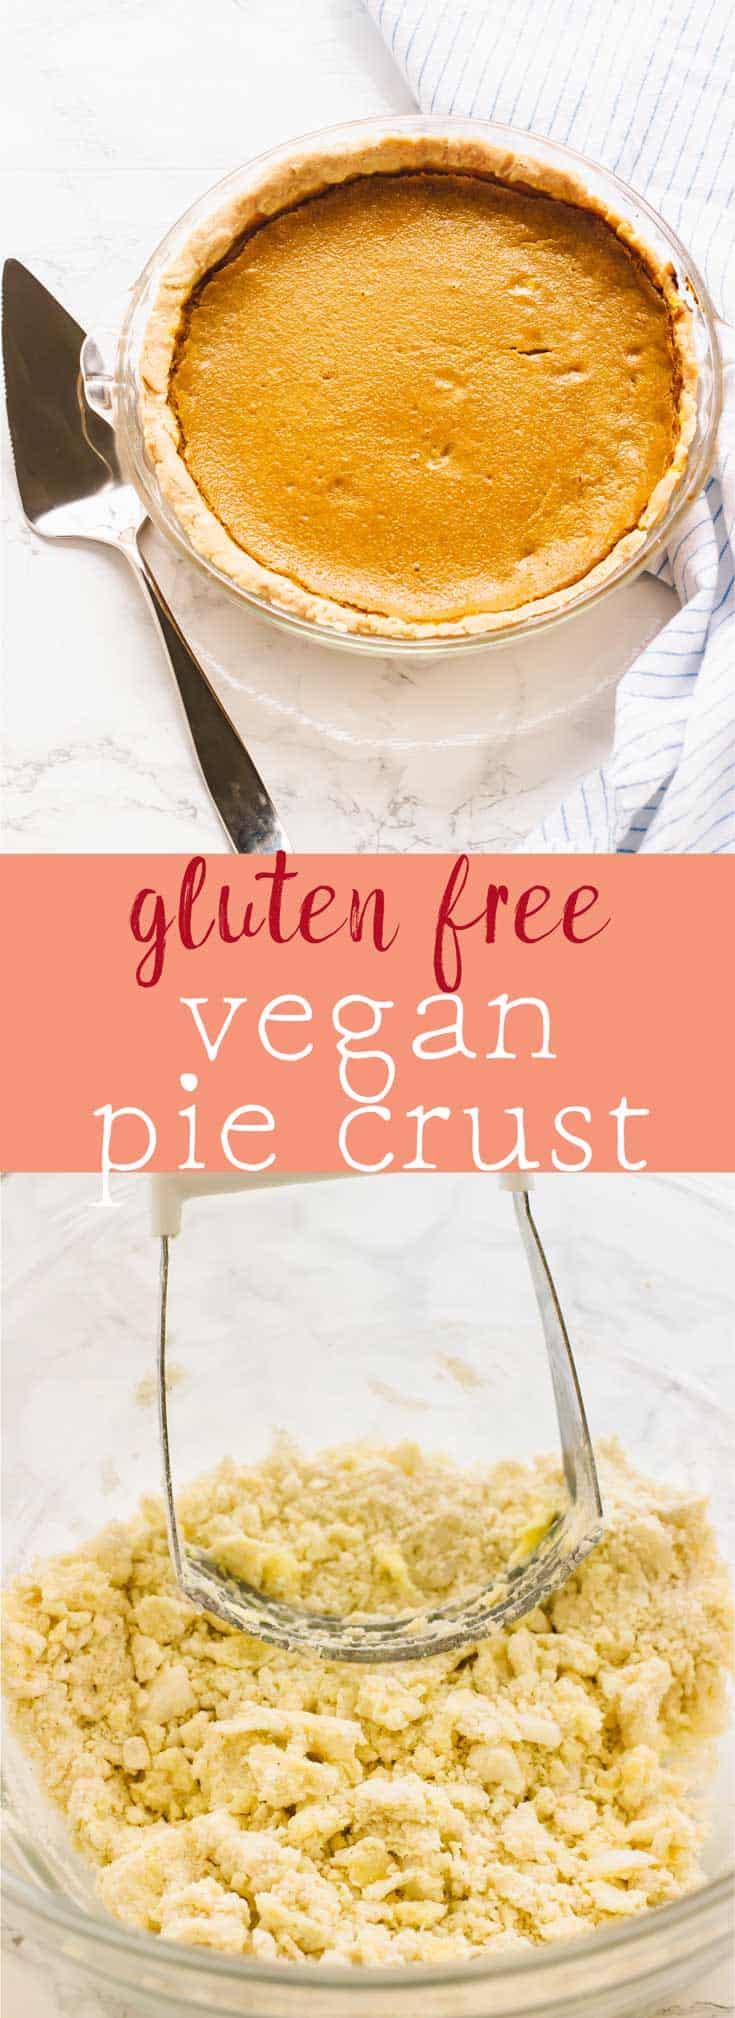 Gluten Free Vegan Pie Crust Video Jessica In The Kitchen,Tofu Scramble Dinner